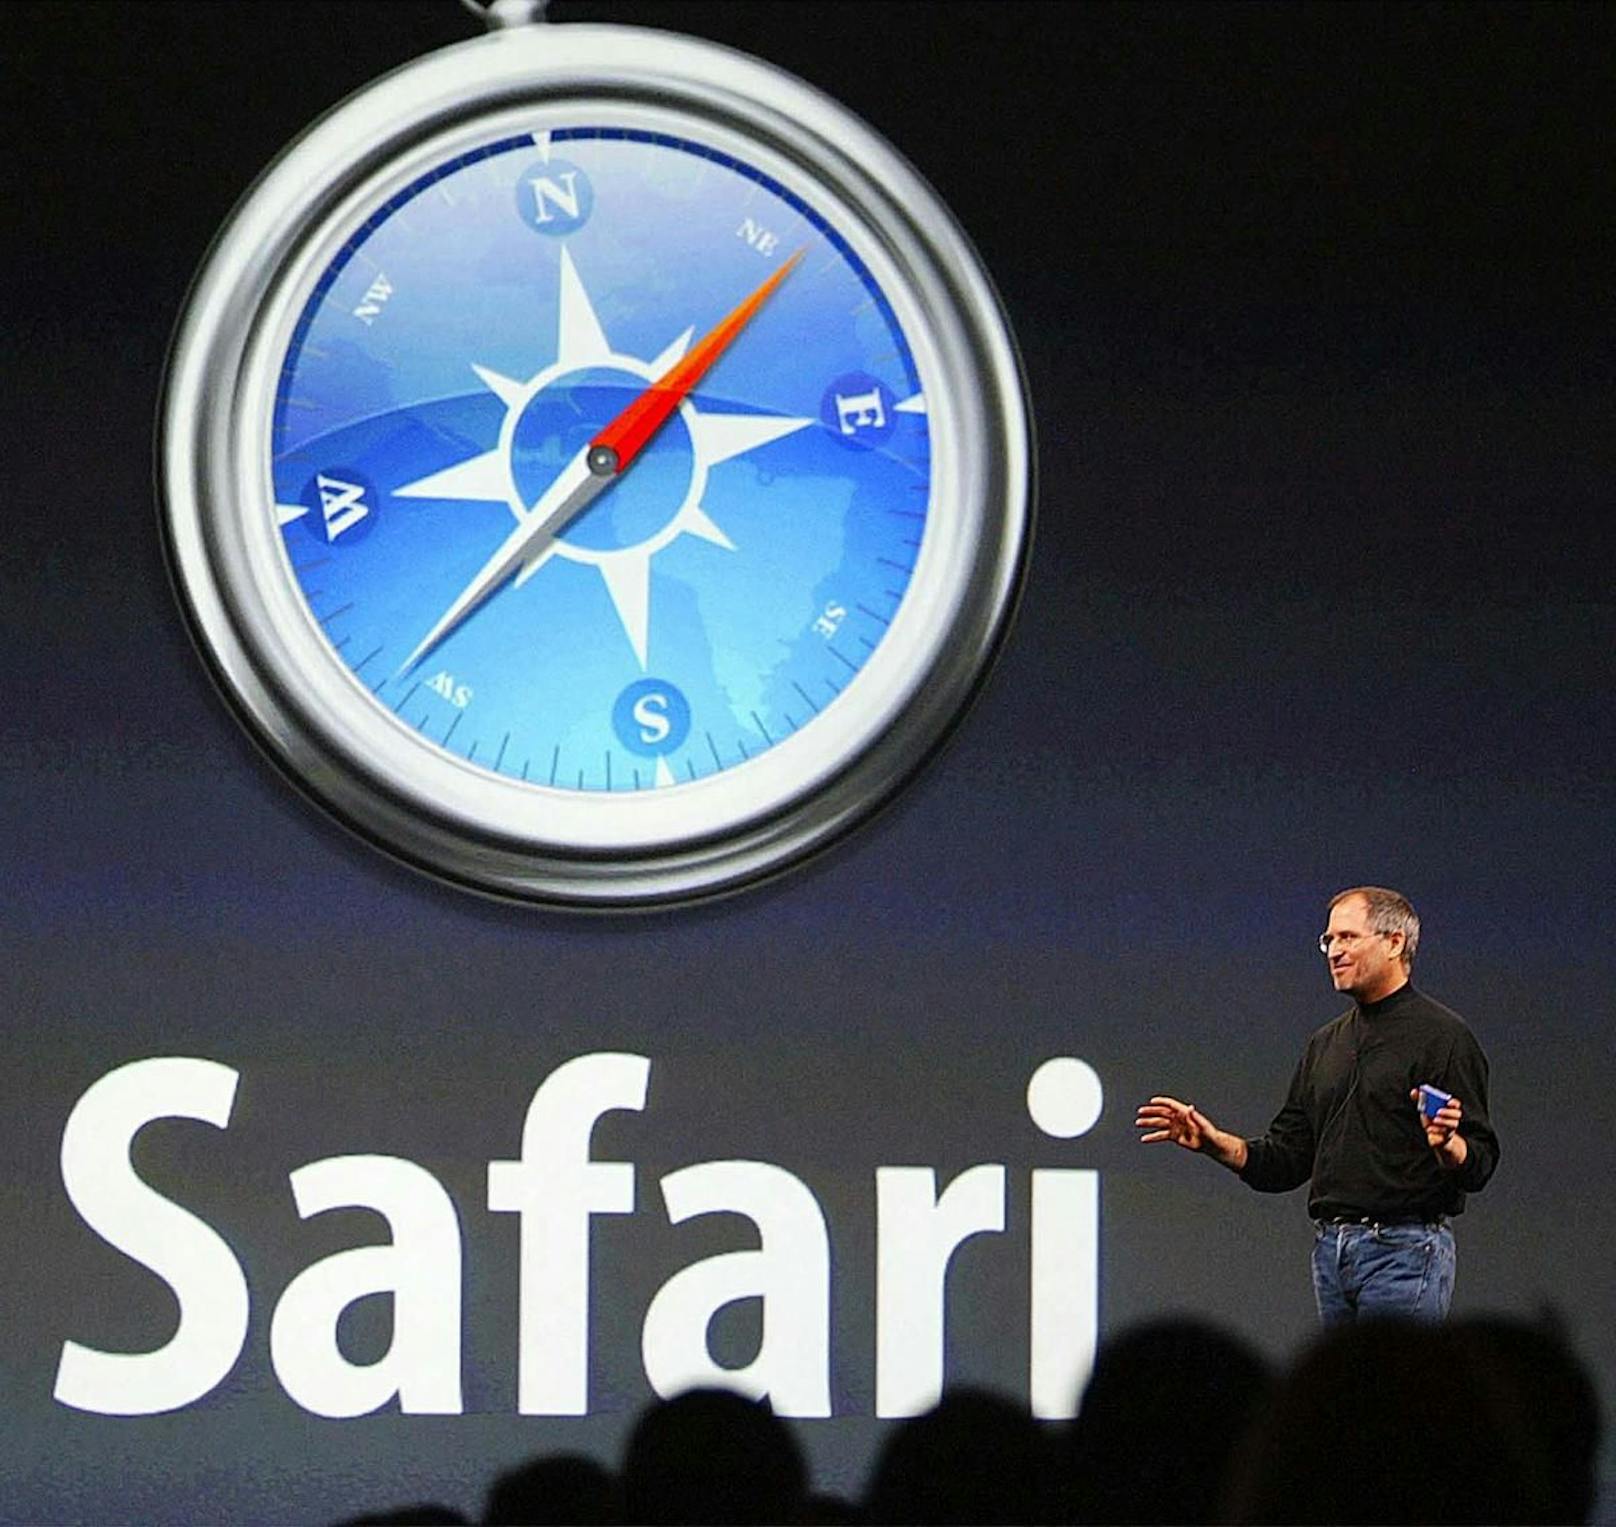 An zweiter Stelle steht Apples Safari.